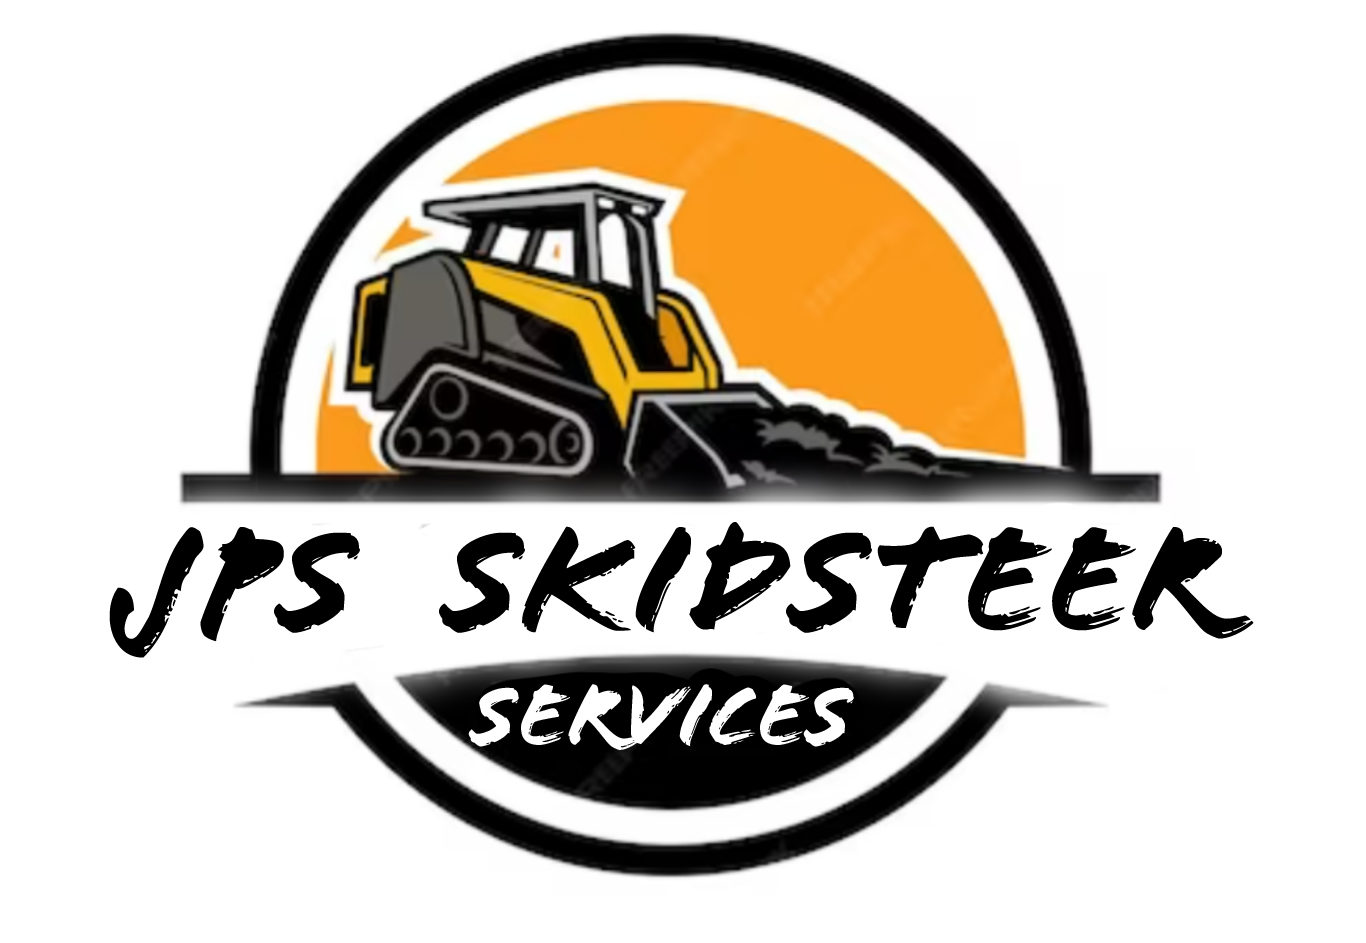 JPS Skid Steer Services